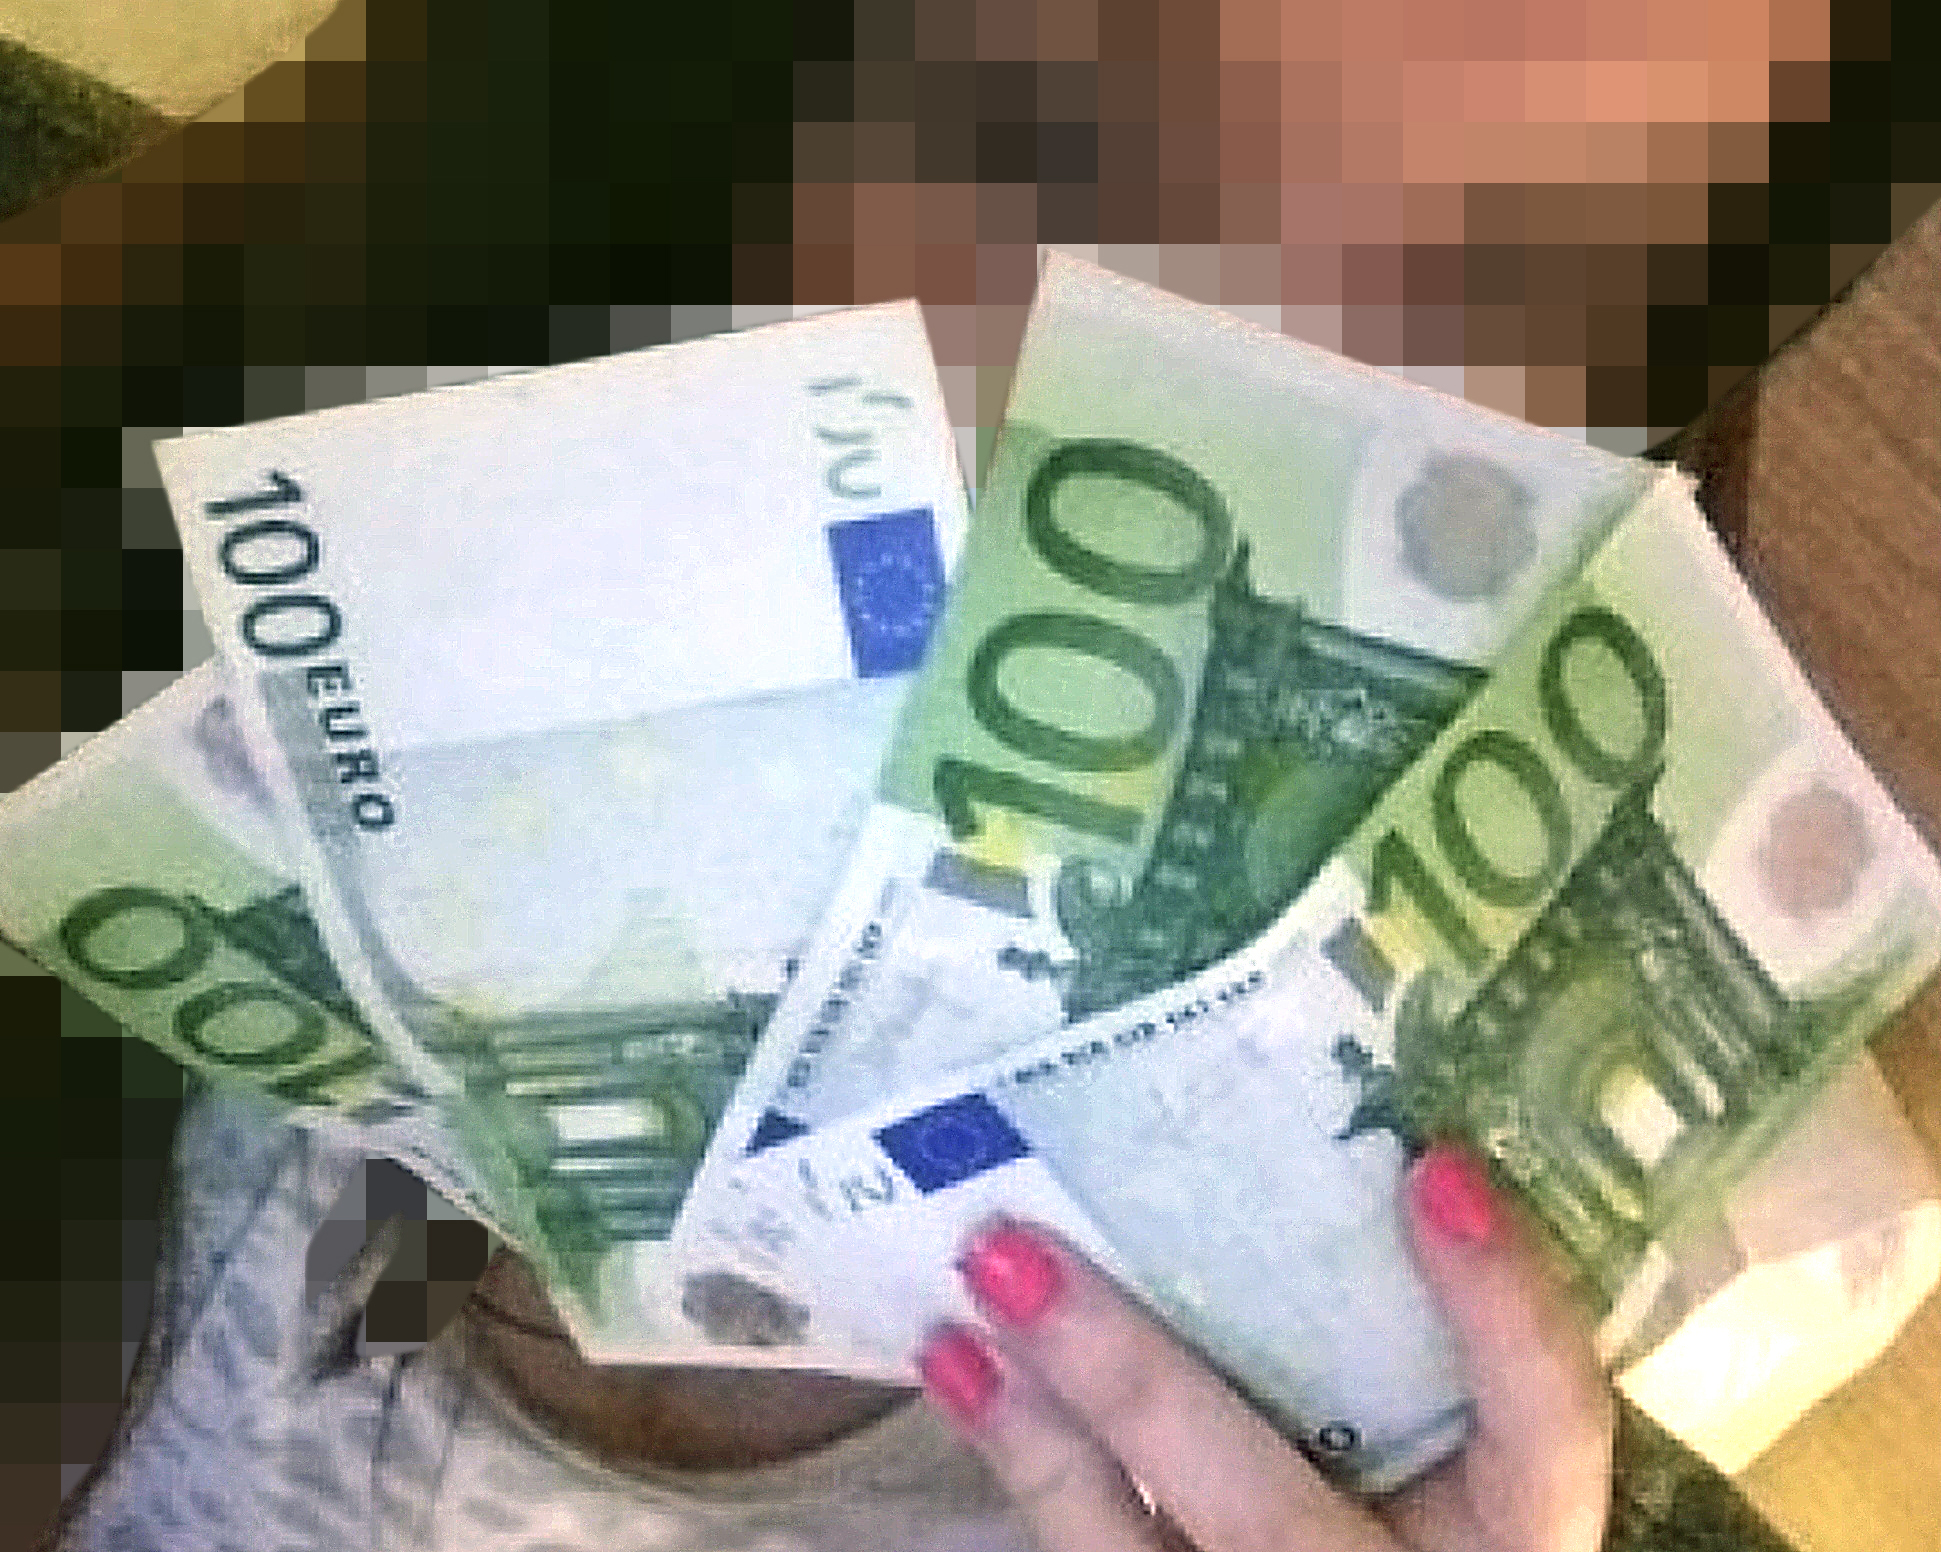 Jacuzzi de la tutela de menores y prostitutas de Baleares: "Insípido pero entonces estoy contento con el dinero."